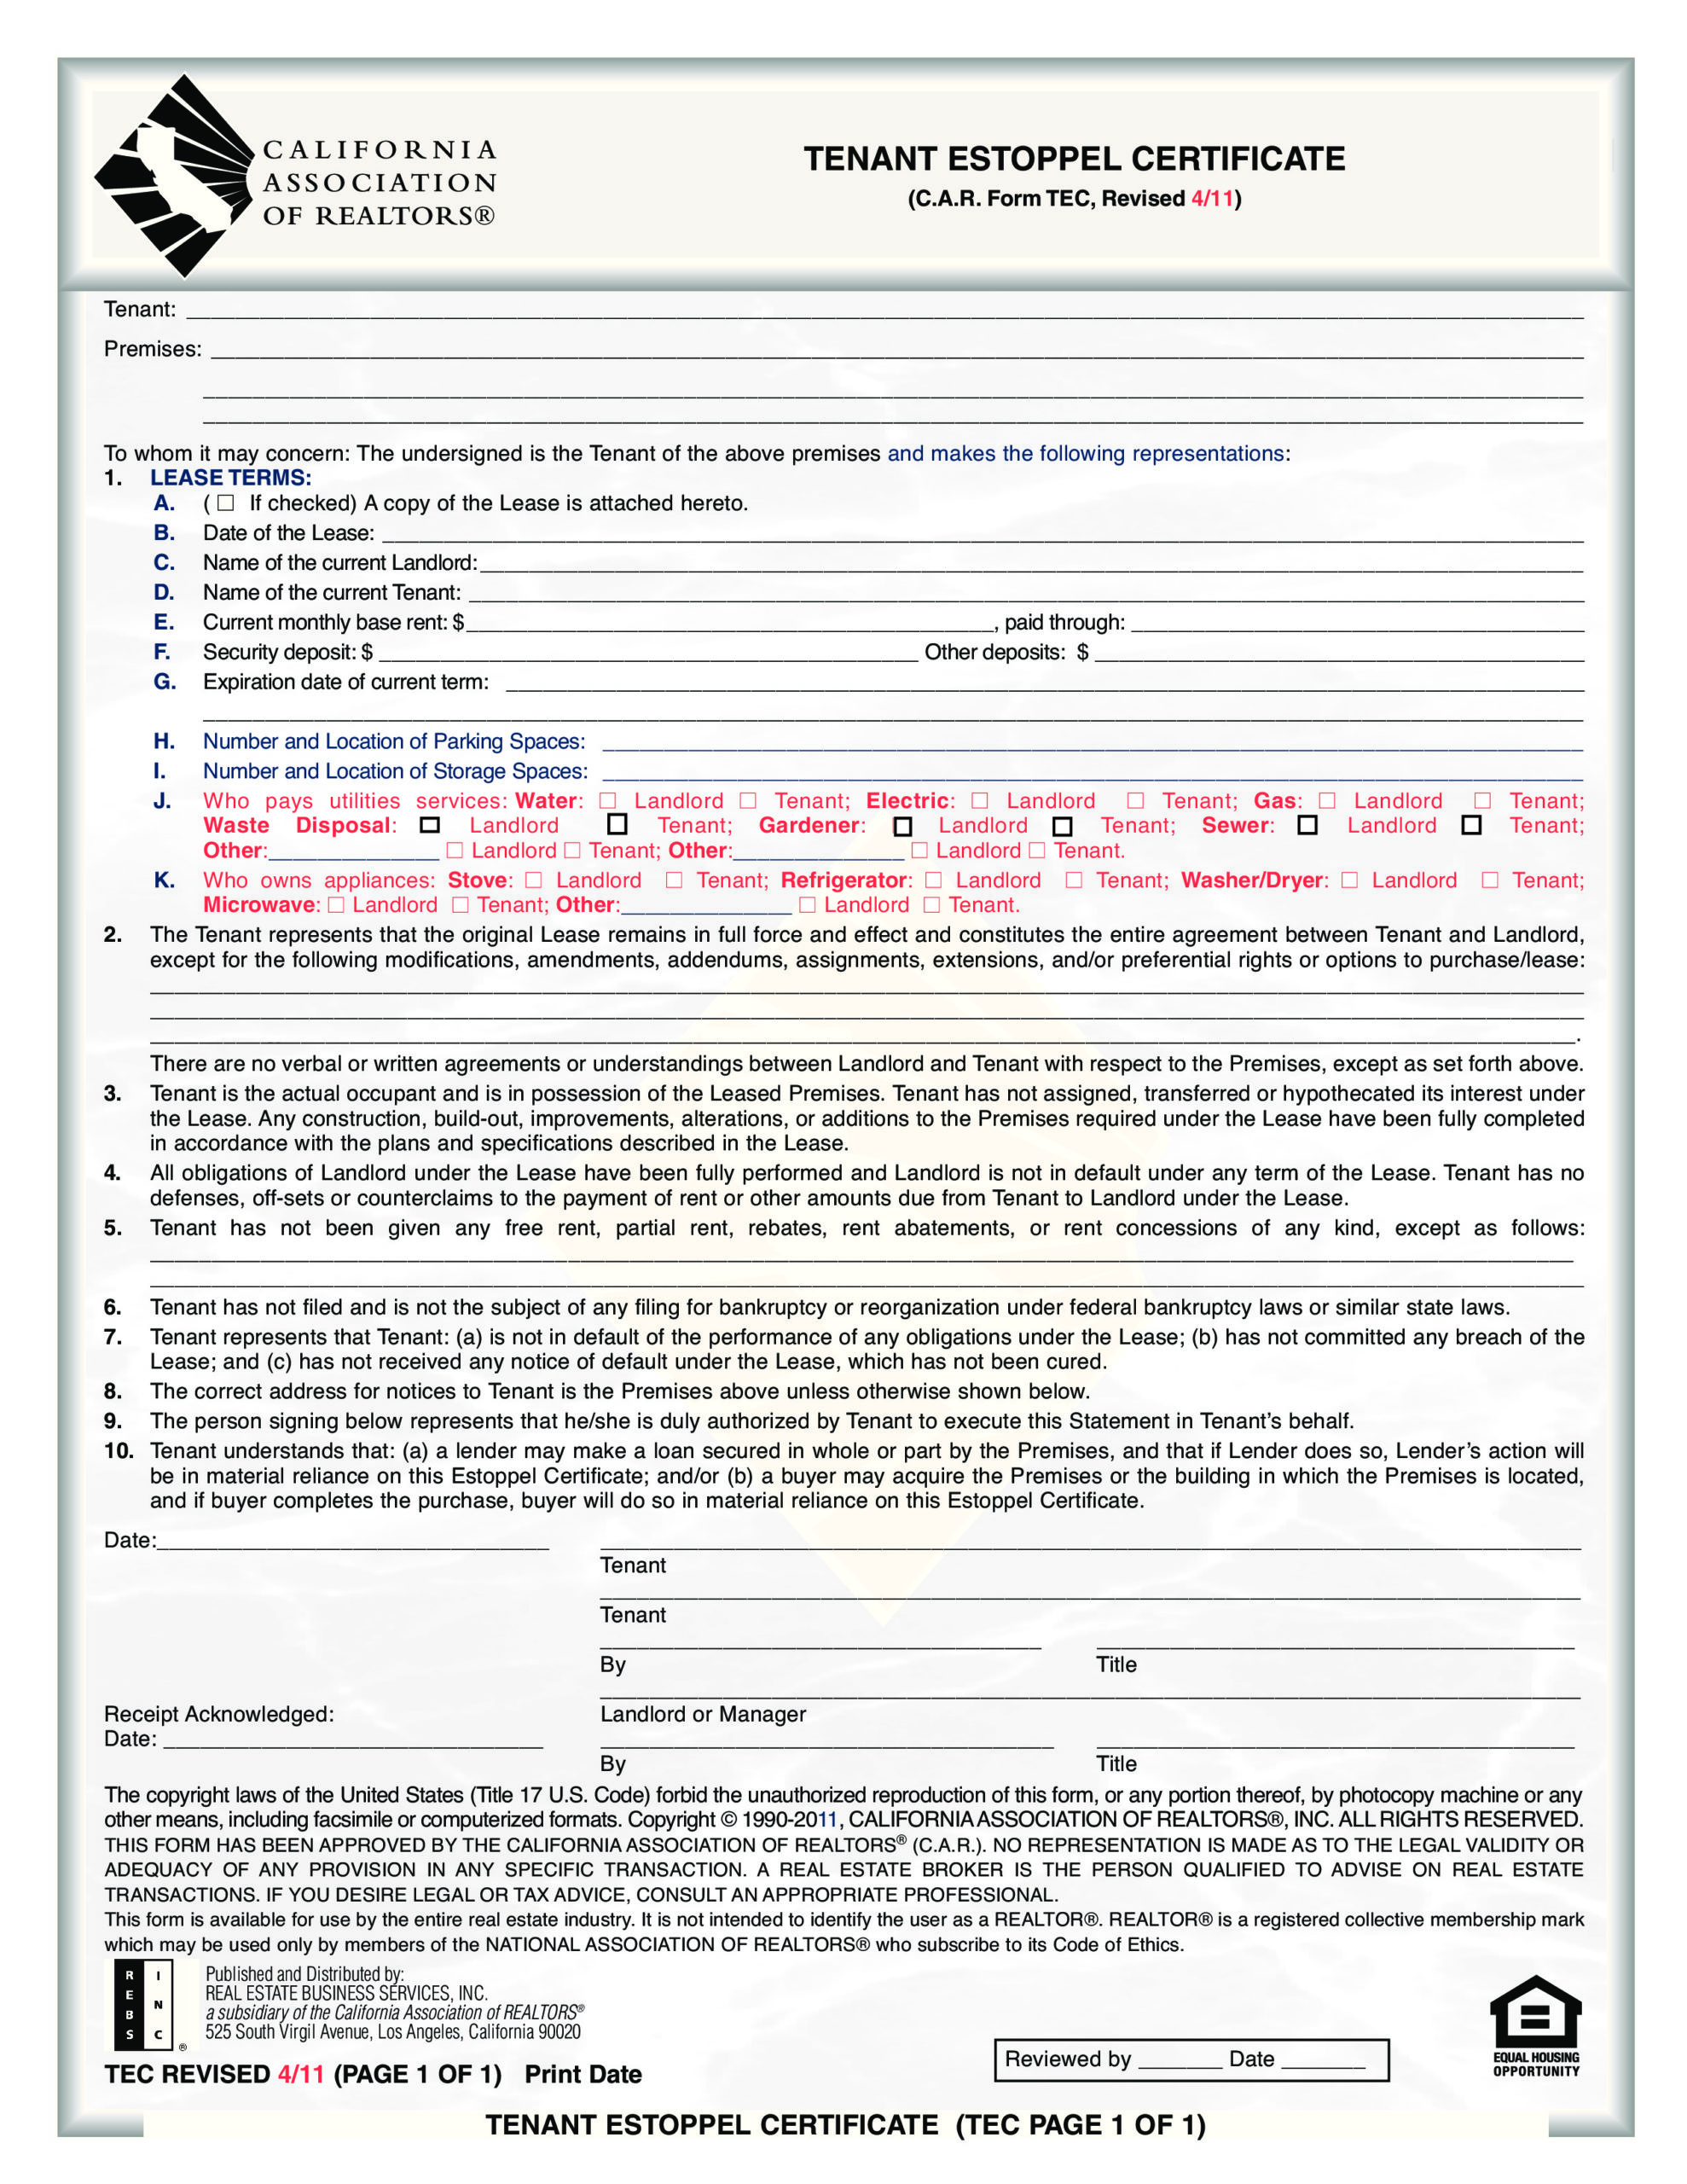 Free estoppel certificate form 25